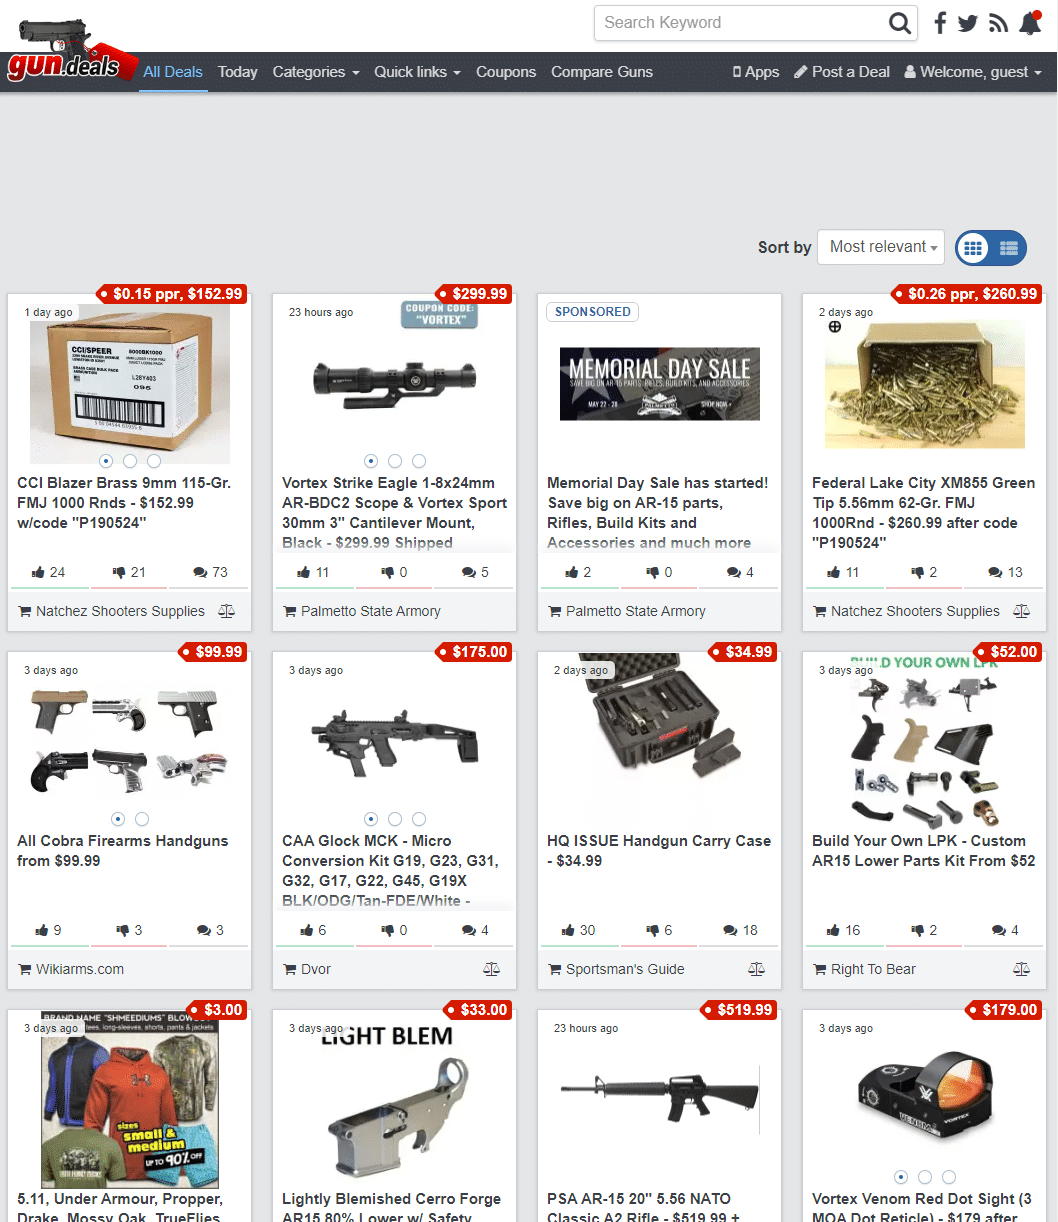 gun.deals website, formerly known as Slickguns